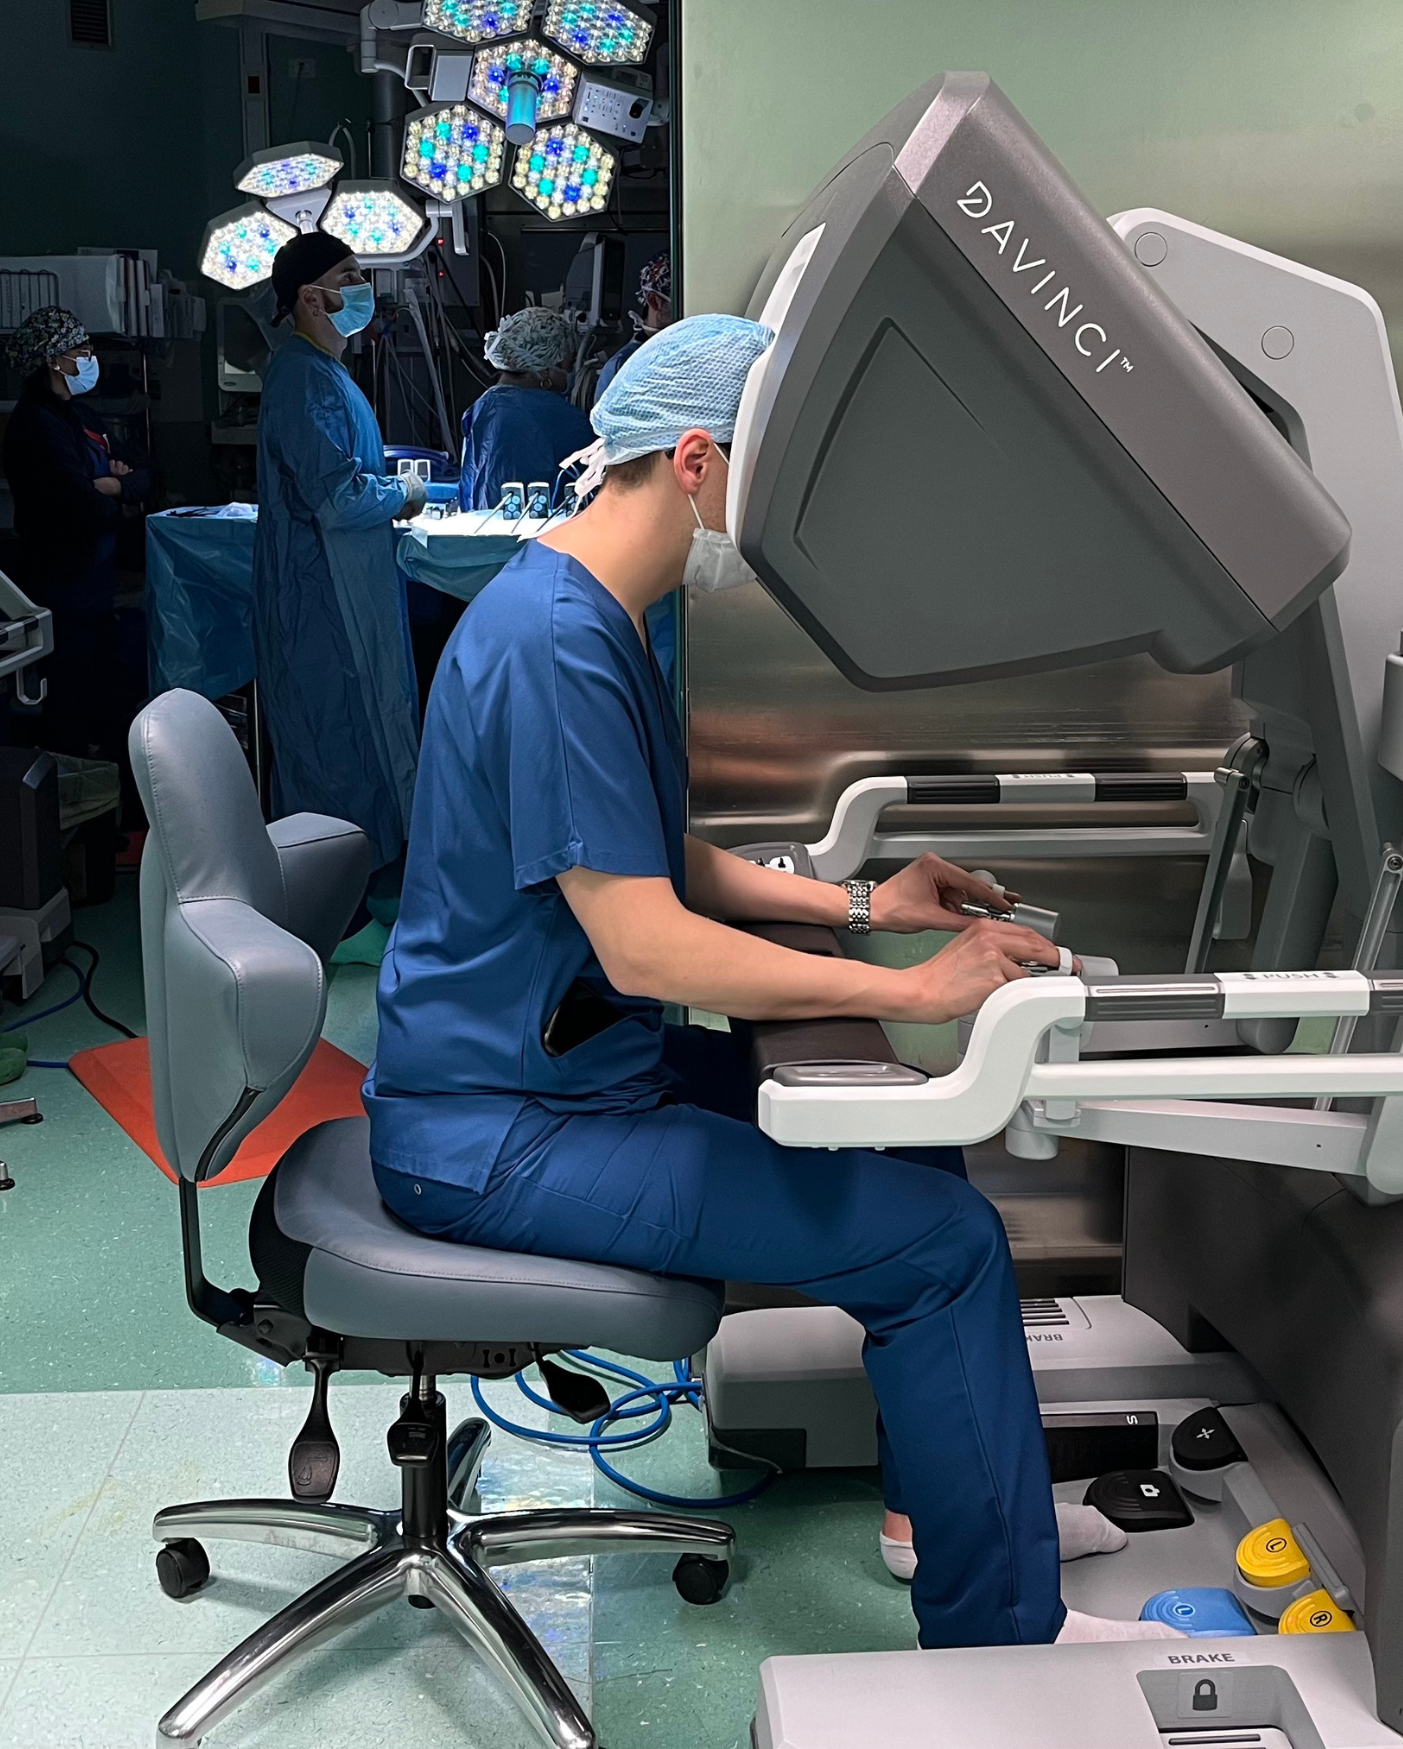 Transmec partecipa alla donazione consolle chirurgica robotica